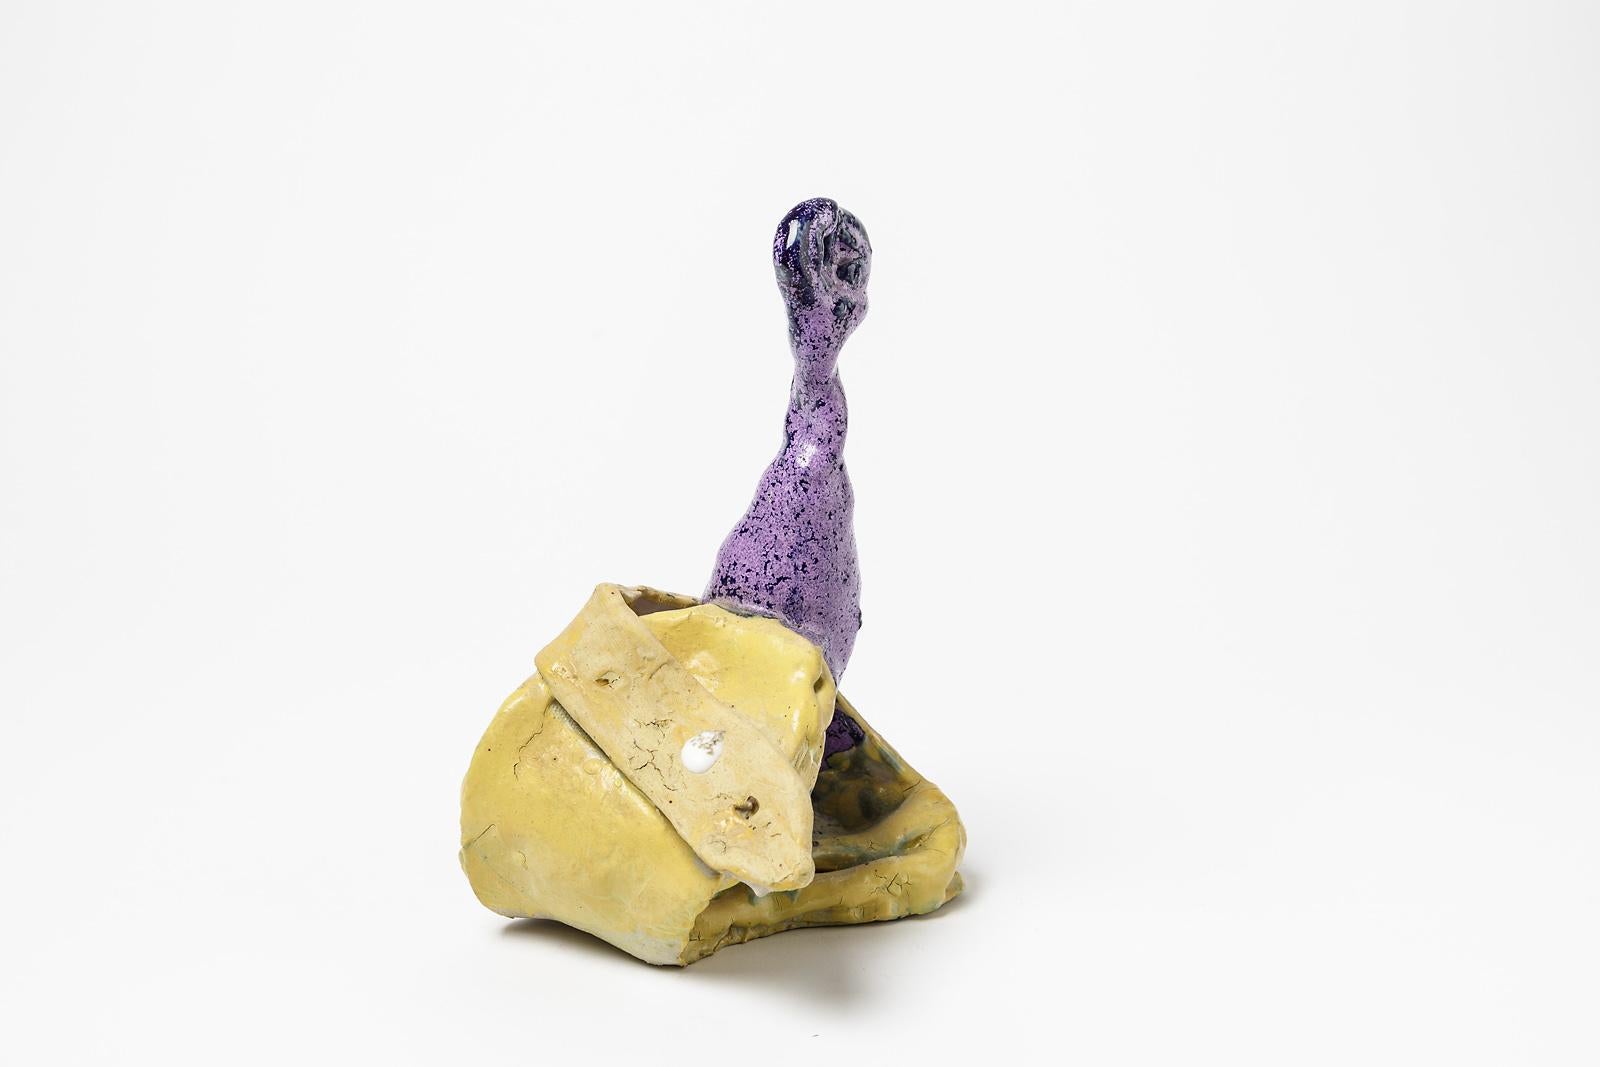 Patrick Crulis

Sculpture abstraite originale en céramique de l'artiste français

Couleurs des émaux céramiques jaunes et violets

Signé sous la base

Provenance : (a) Gallery Gallery.

Mesures : Hauteur : 25cm, largeur : 20cm, profondeur